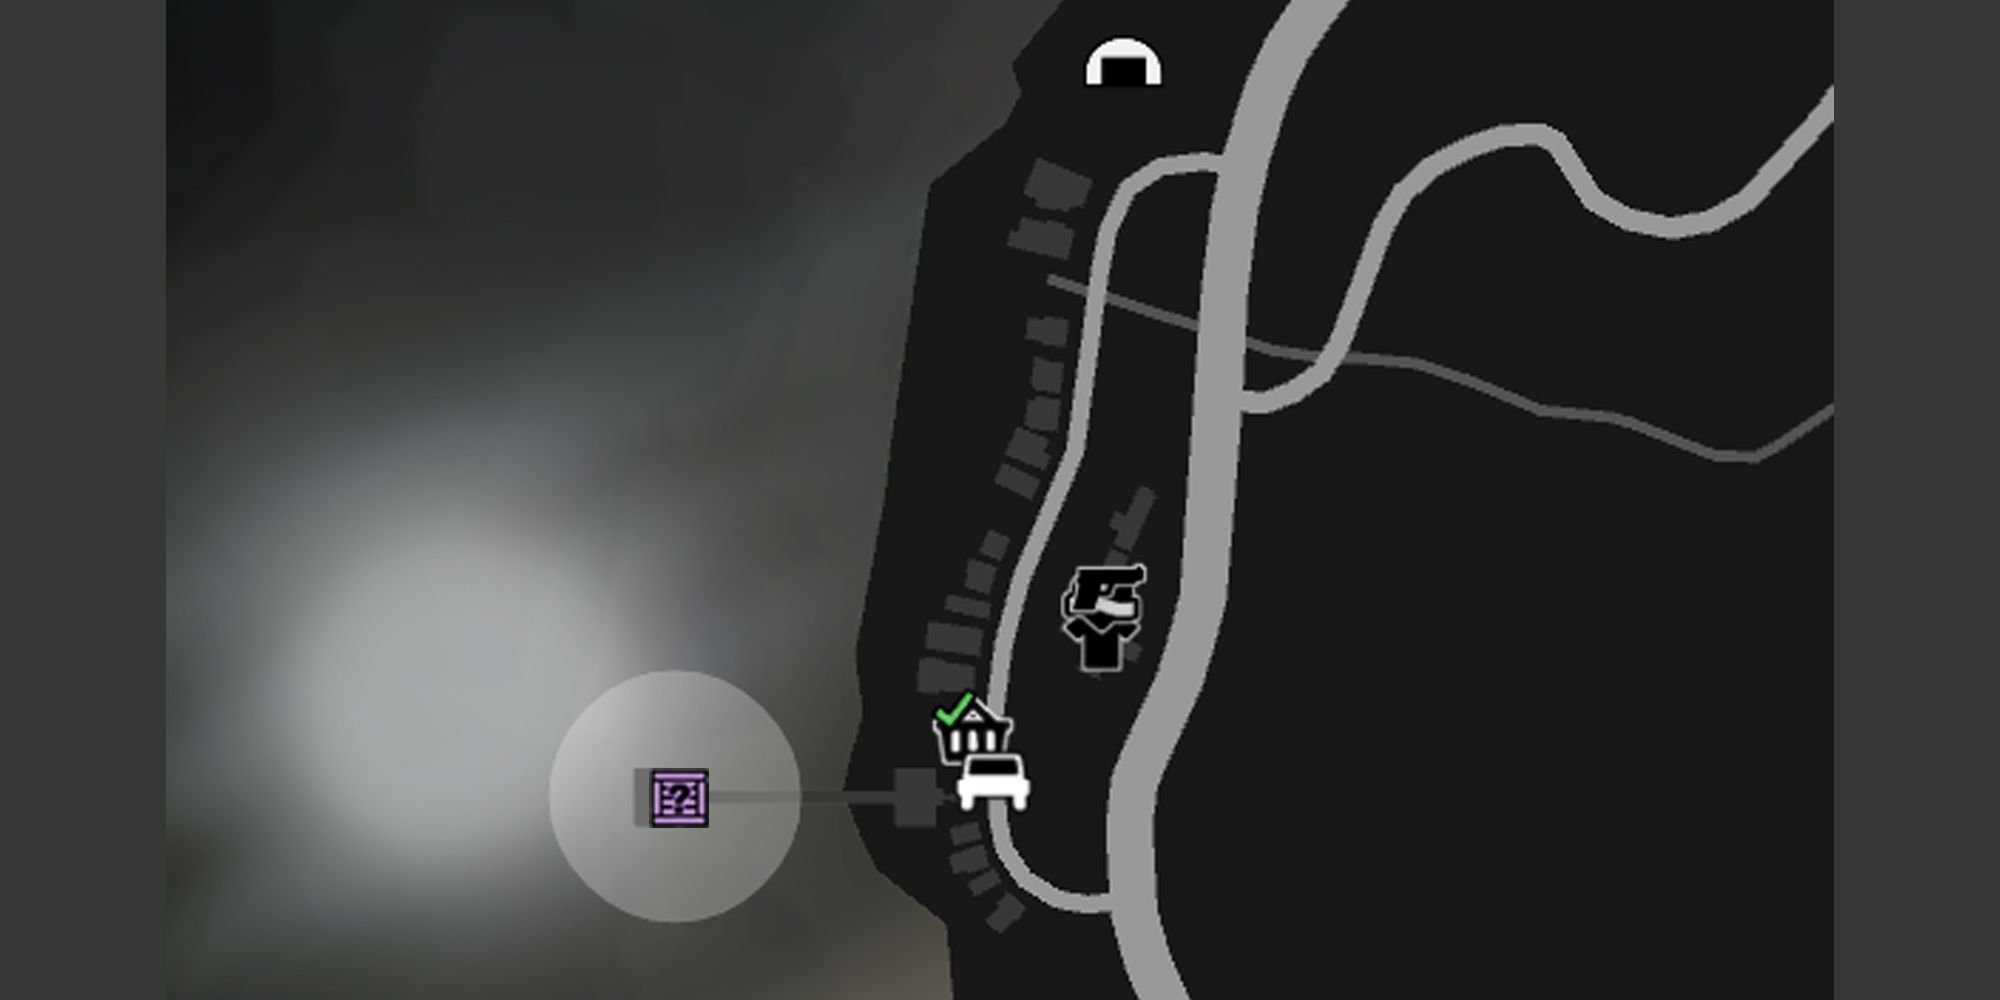 画像はGTAオンラインの地図上のチュマッシュ・ヒストリック・ファミリー・ピアで、グレーの円と紫のG'sキャッシュの箱のアイコンが示されています。